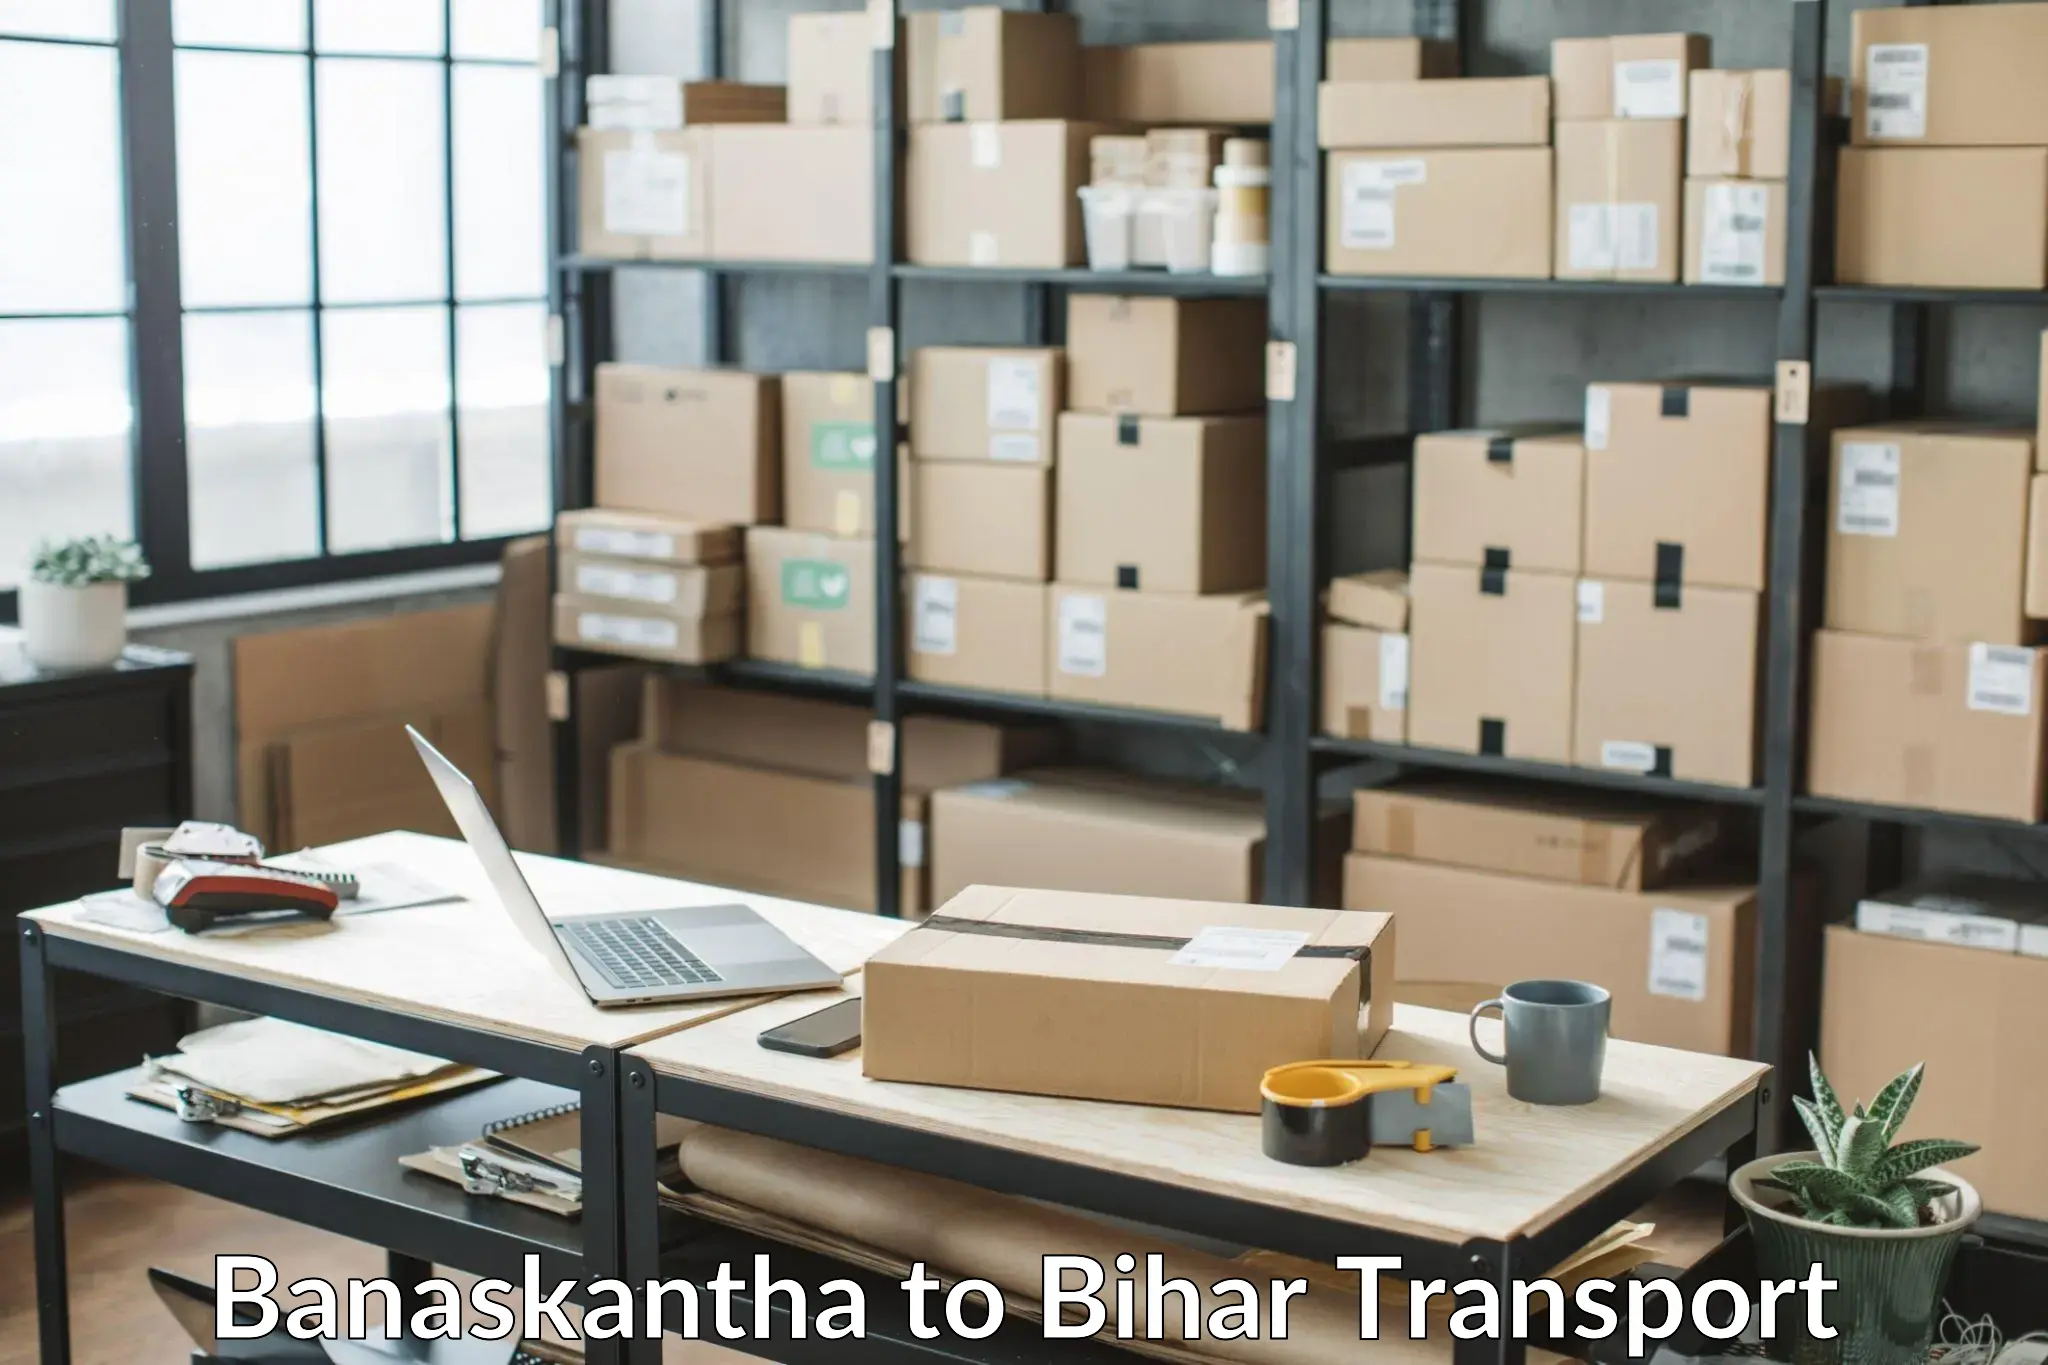 Bike shipping service Banaskantha to Dhaka